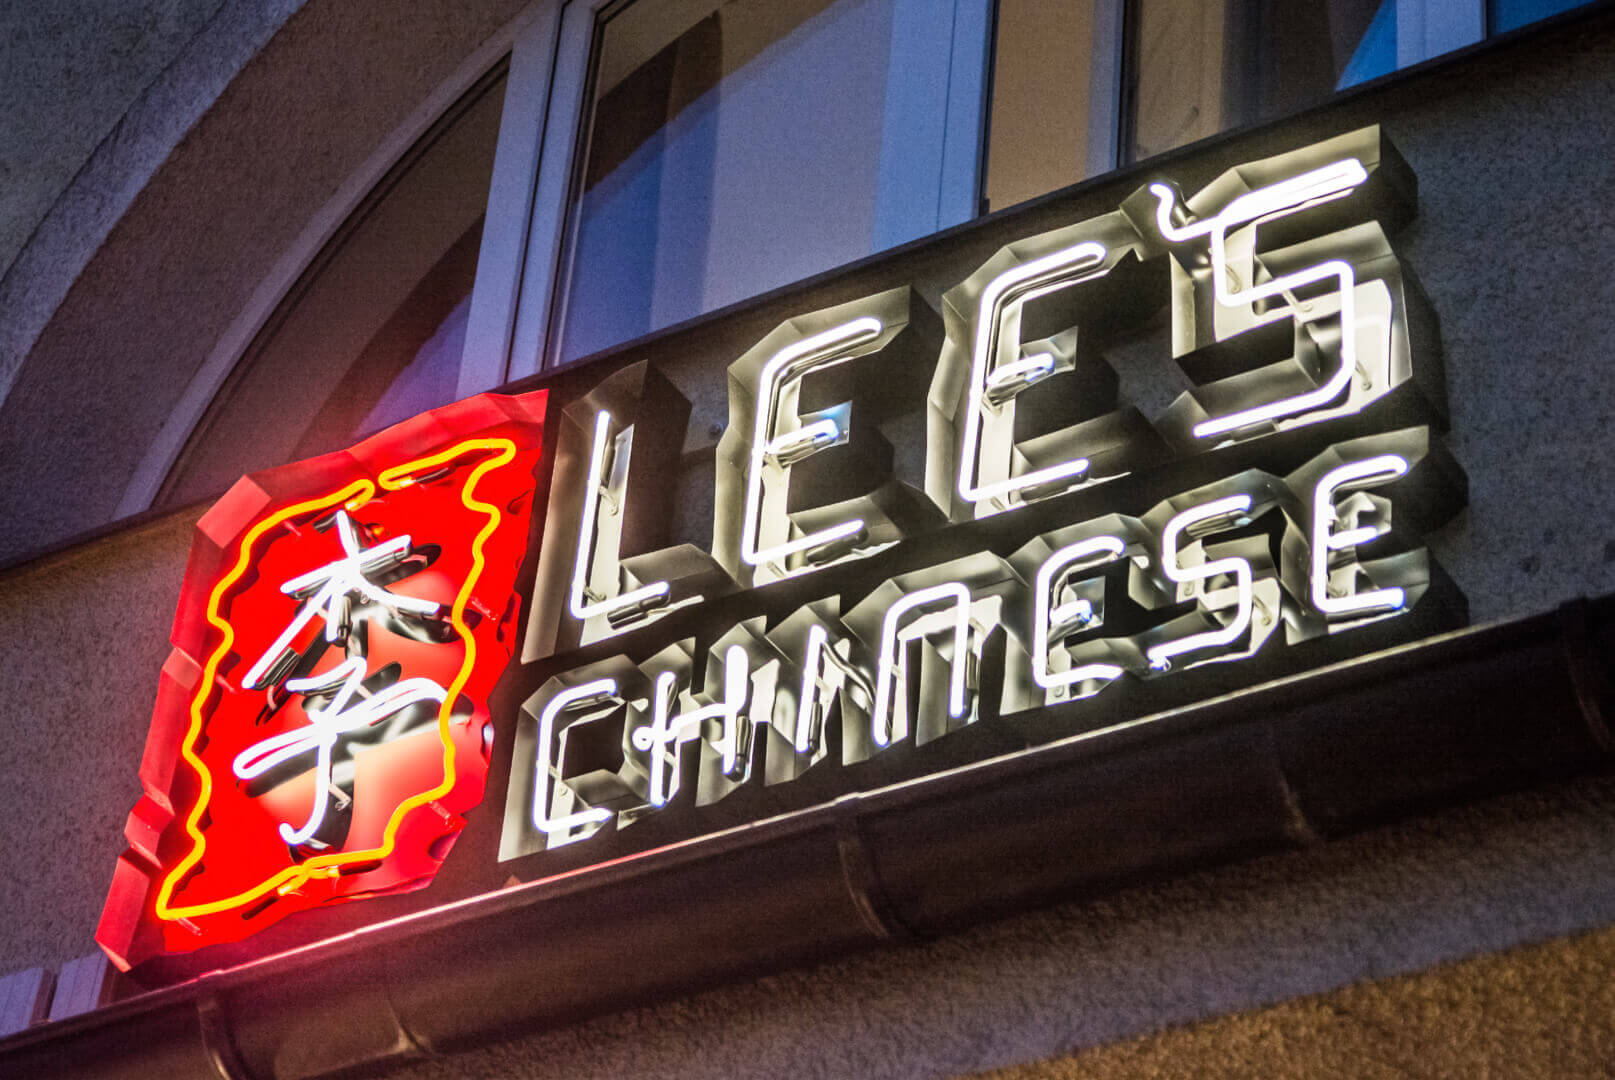 Lees Chinesisch - neon-lees-chinese-neon-über-dem-Eingang-zum-Restaurant-neon-an-der-Wand-neon-an-der-Außenseite-neon-im-melierten-rostenden-logo-schild-chinese-buchstaben-schilder-neon-buchstaben-unter-beleuchtet-china-restuarant-gdansk